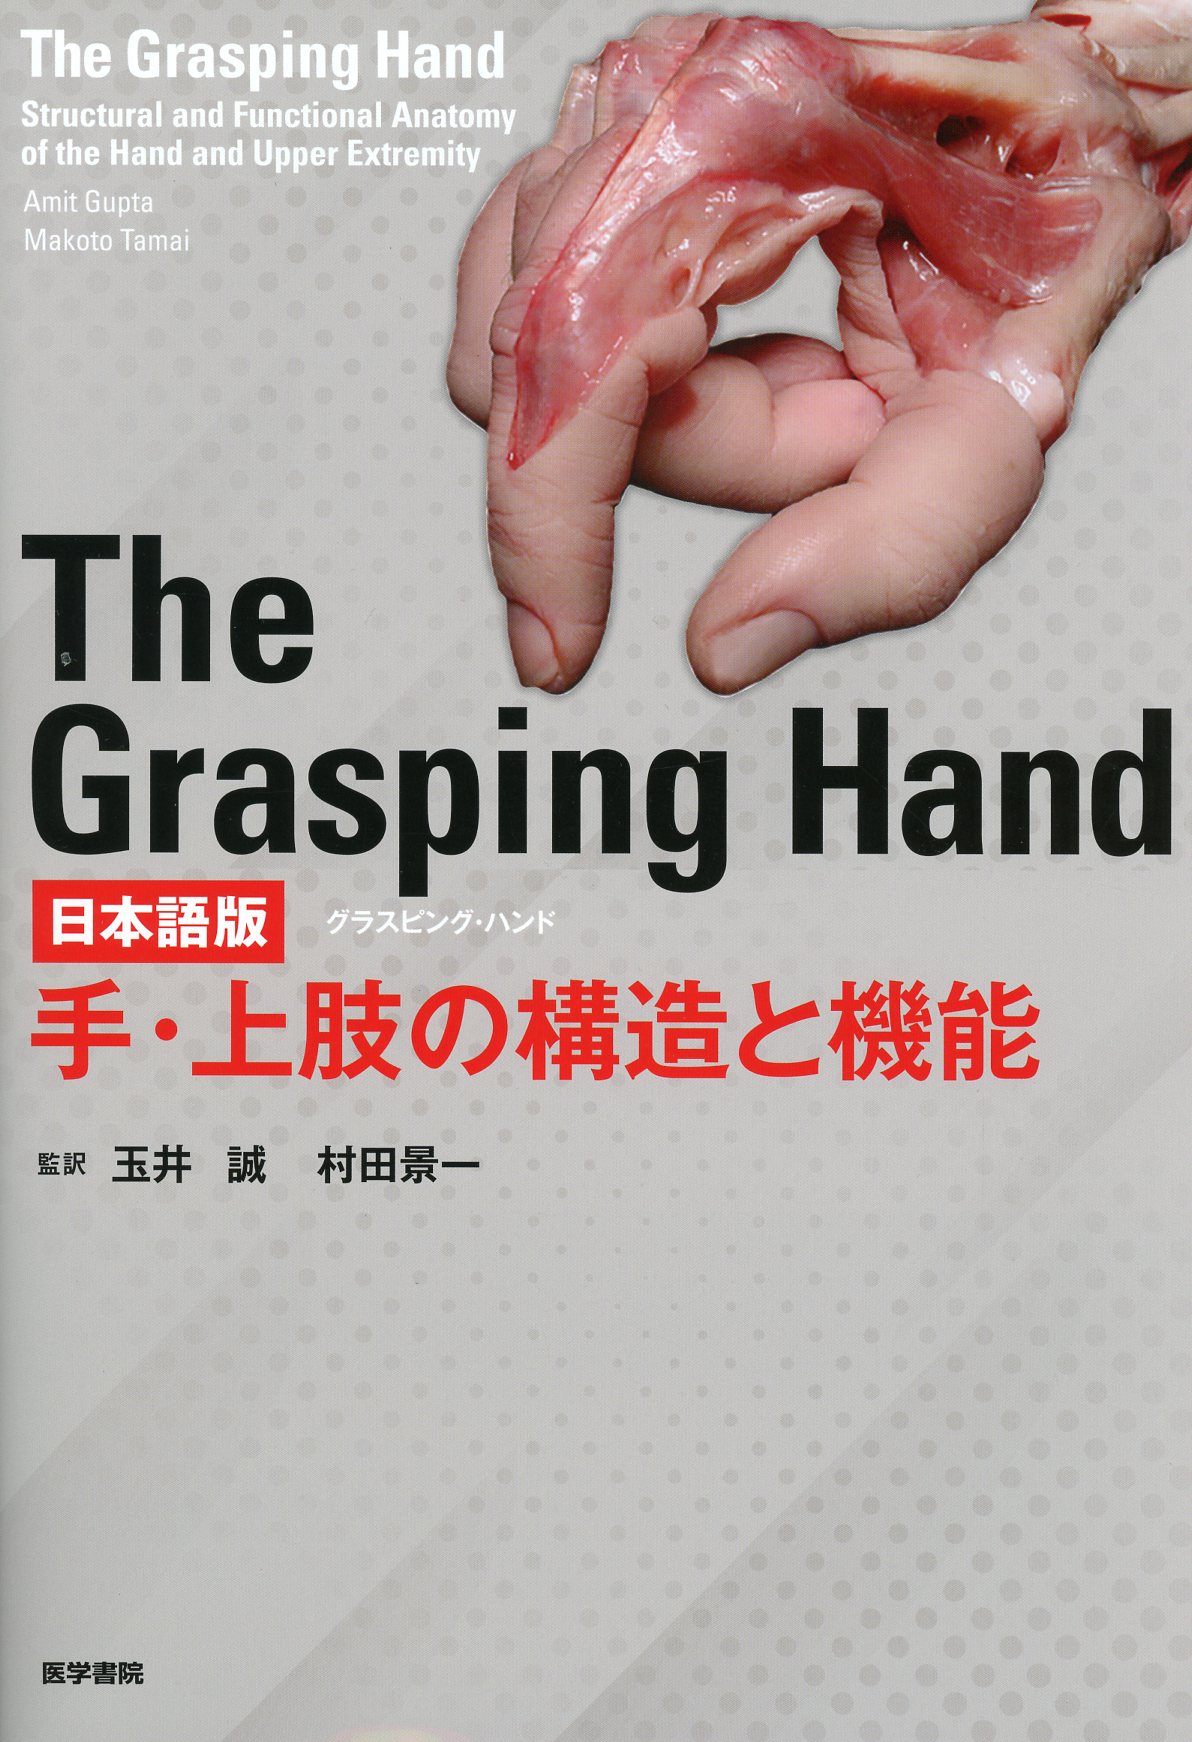 MakotoTamaiThe Grasping Hand : 日本語版 : 手・上肢の構造と機能